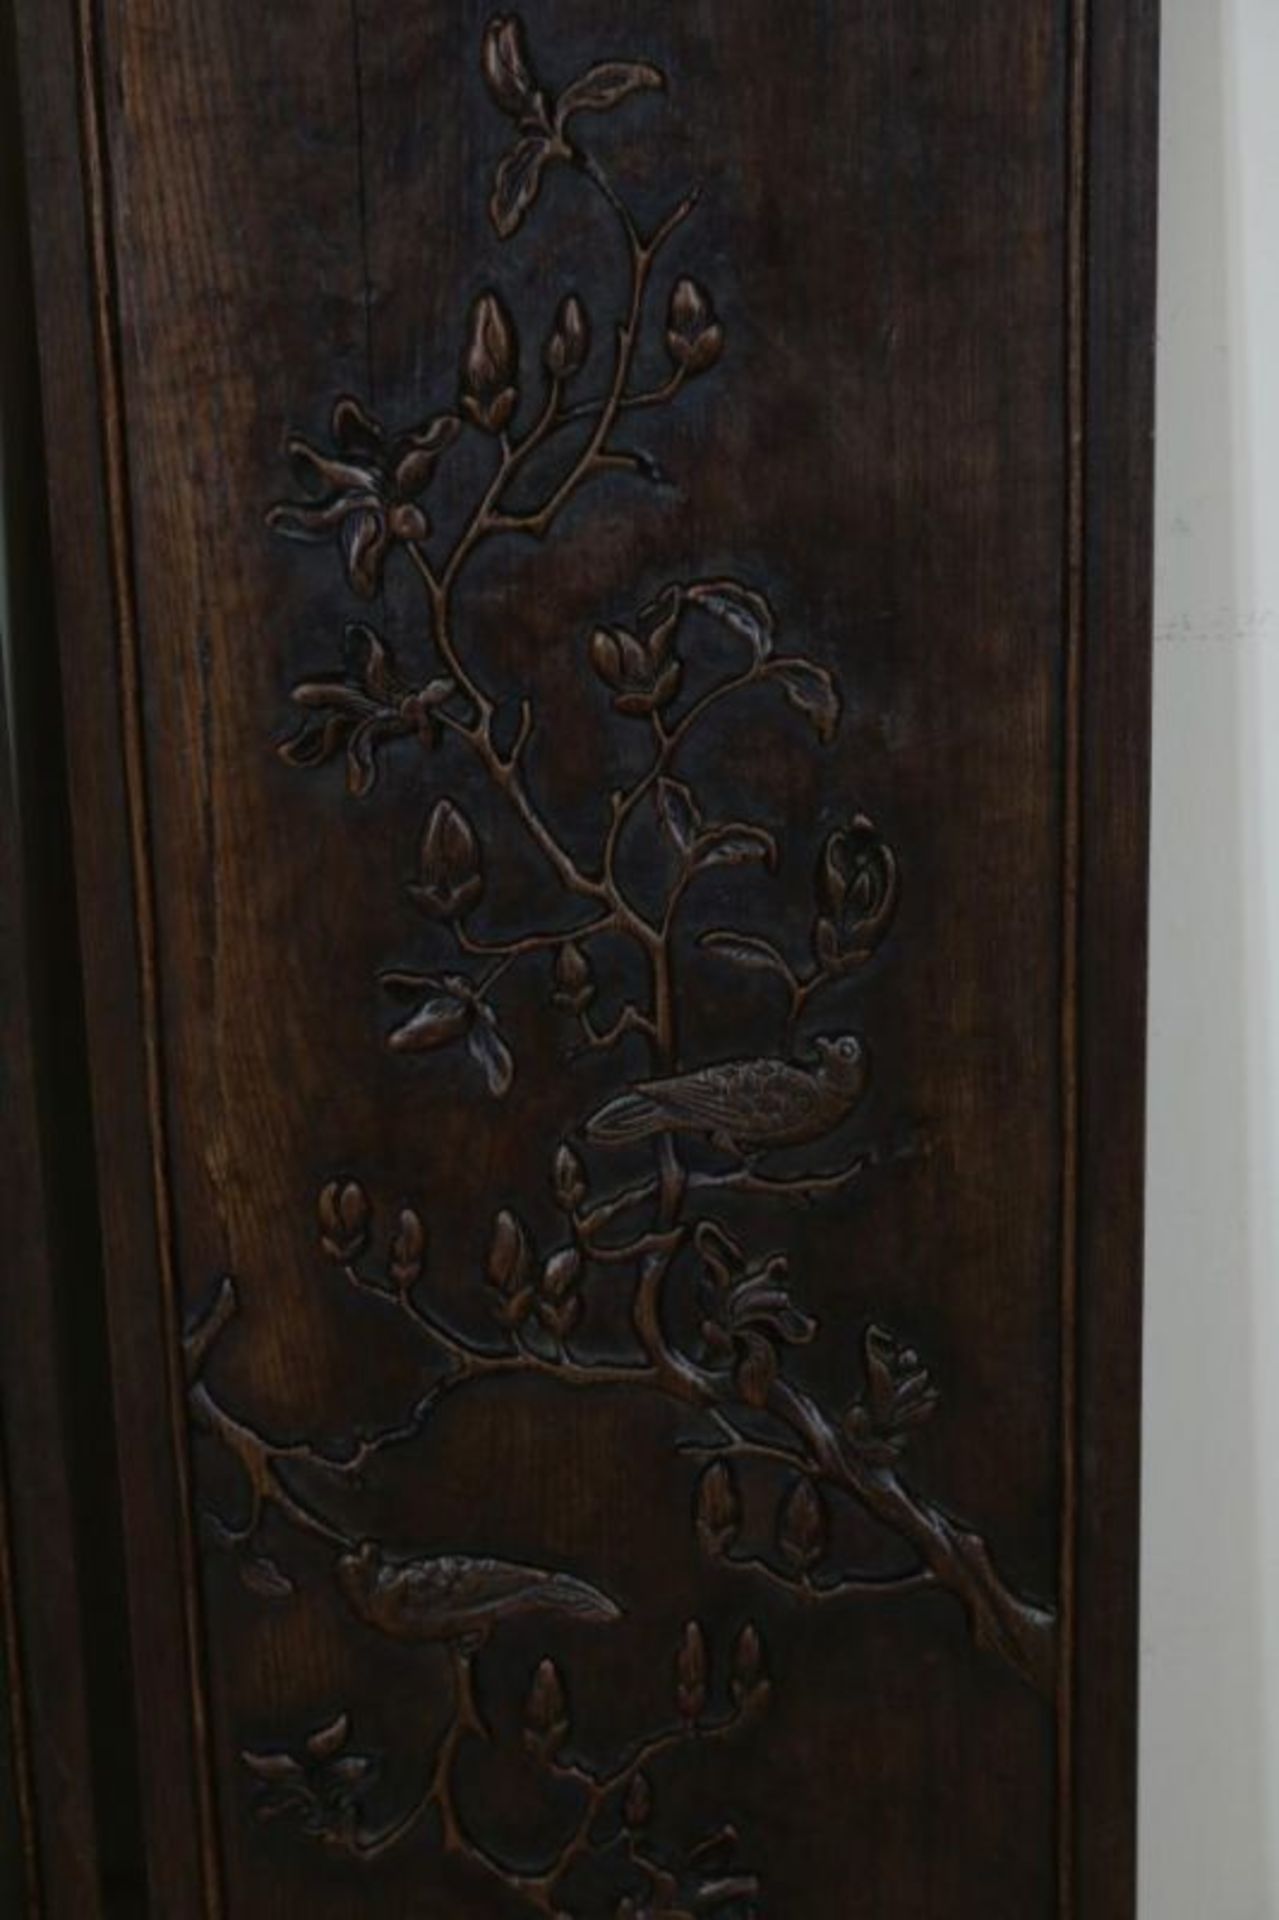 Stel houten wandpanelen met relief gestoken vogels op tak, 87 x 27 cm. - Bild 3 aus 3